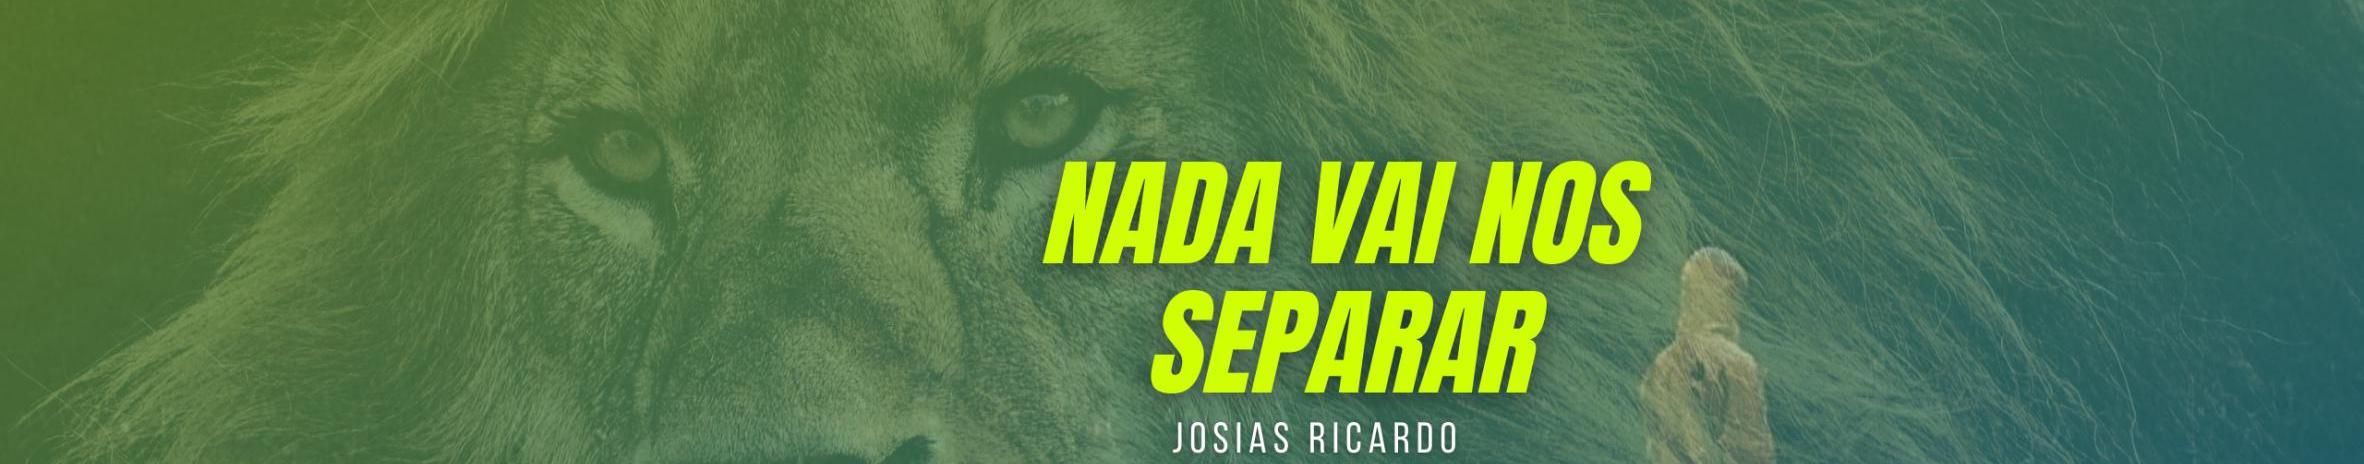 Imagem de capa de Josias Ricardo